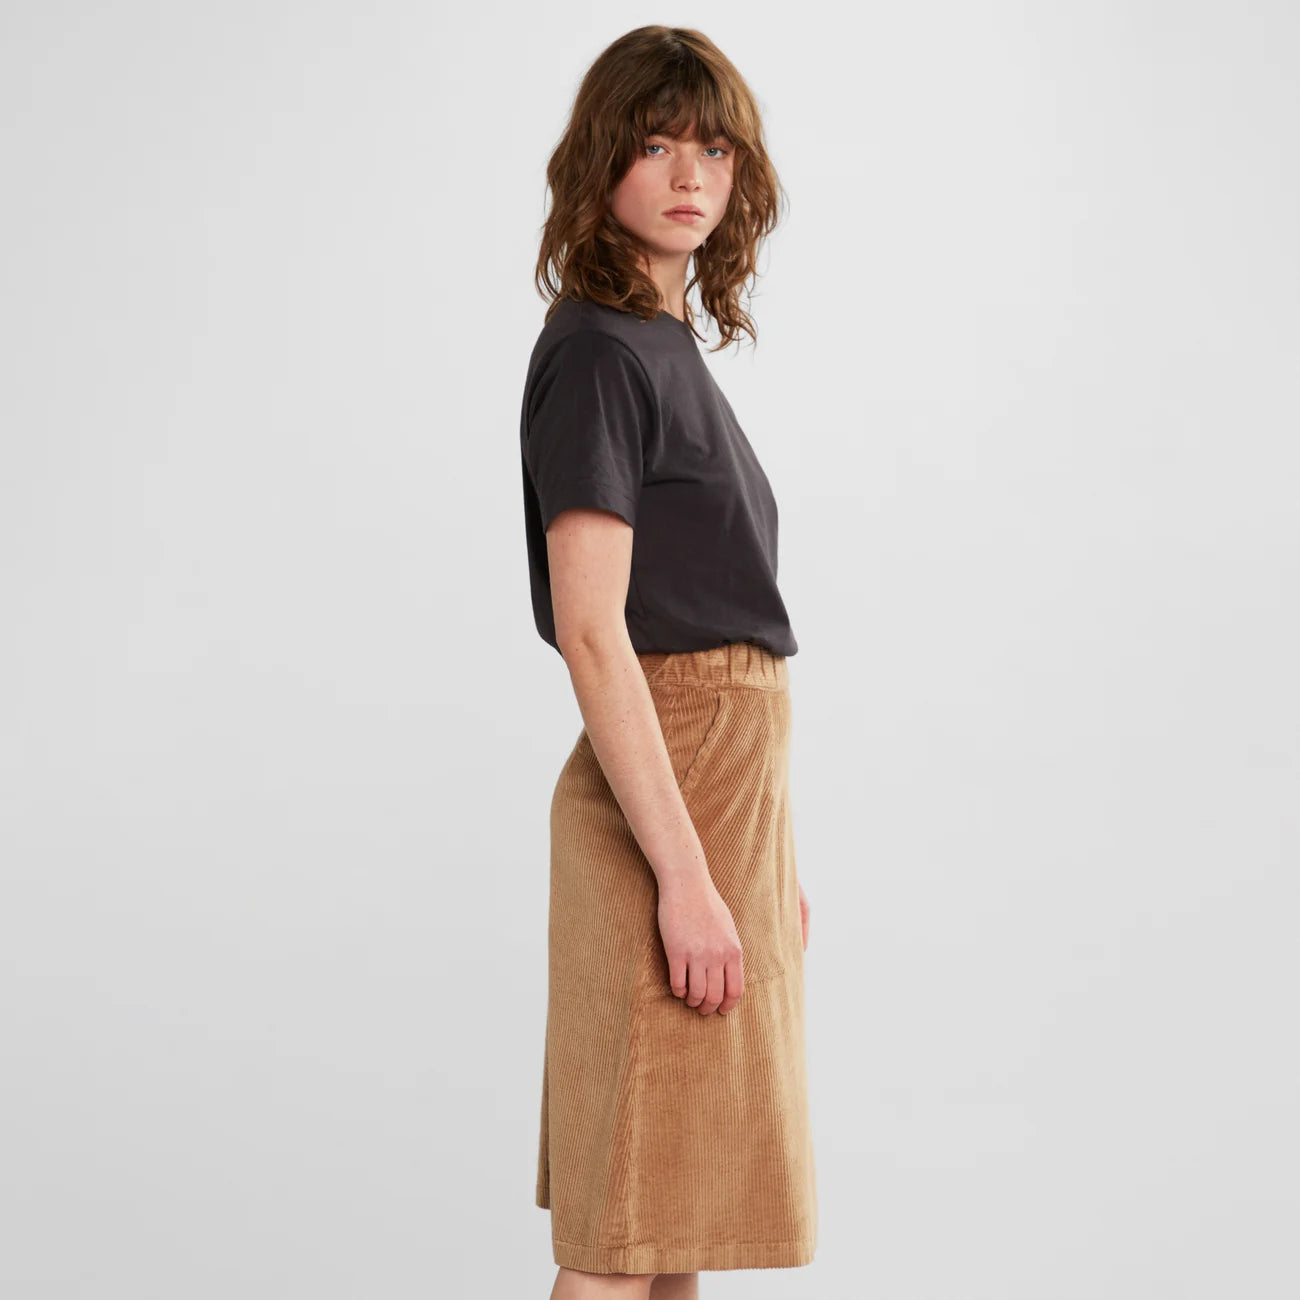 Skirt Haga made of organic corduroy